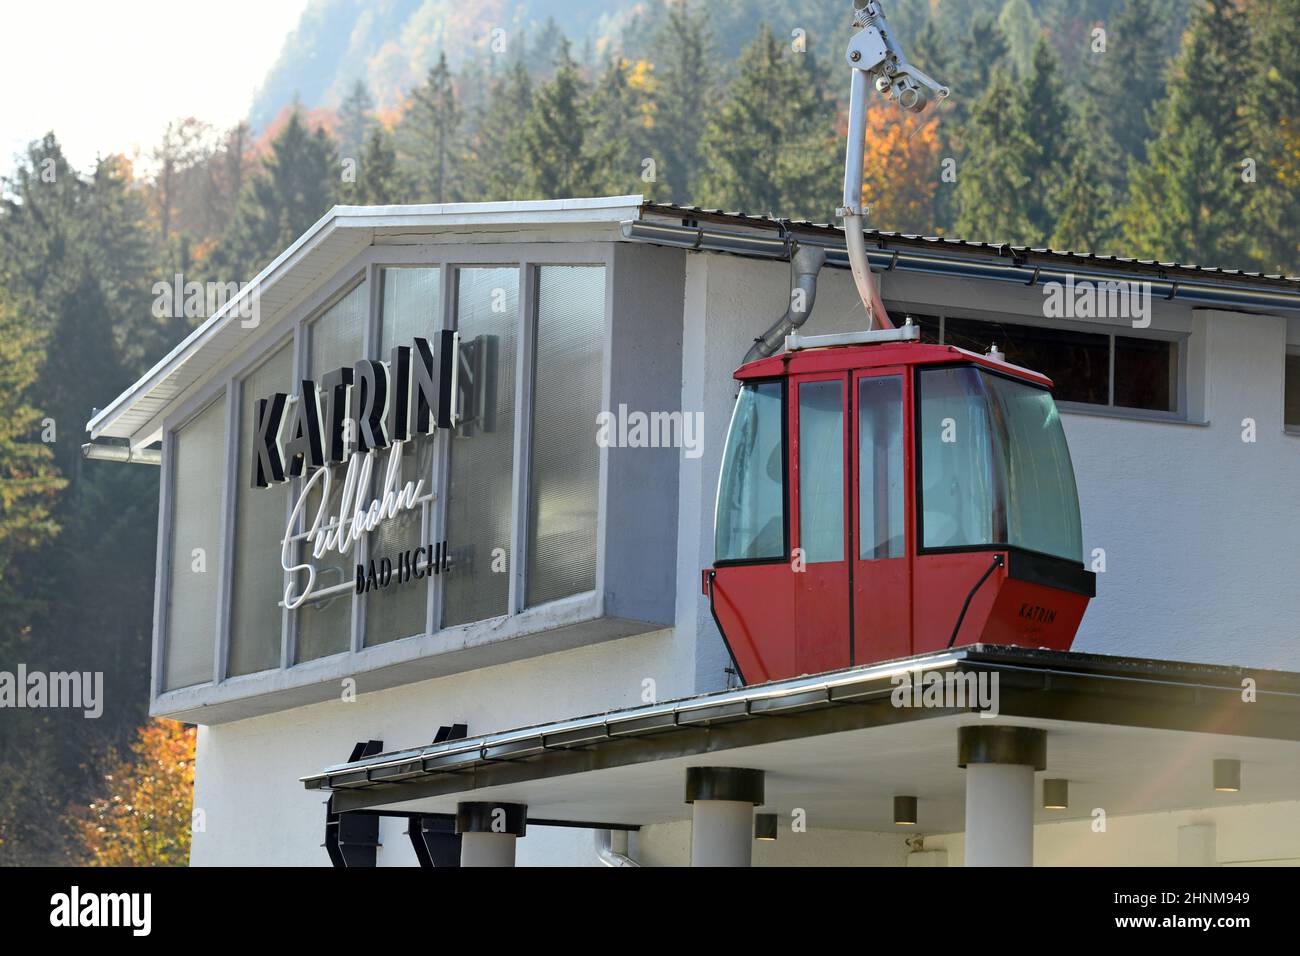 Katrin-Seilbahn en Bad Ischl (Salzkammergut, Bezirk Gmunden, Oberösterreich, Österreich) - Teleférico de Katrin en Bad Ischl (Salzkammergut, distrito de Gmunden, Alta Austria, Austria) Foto de stock